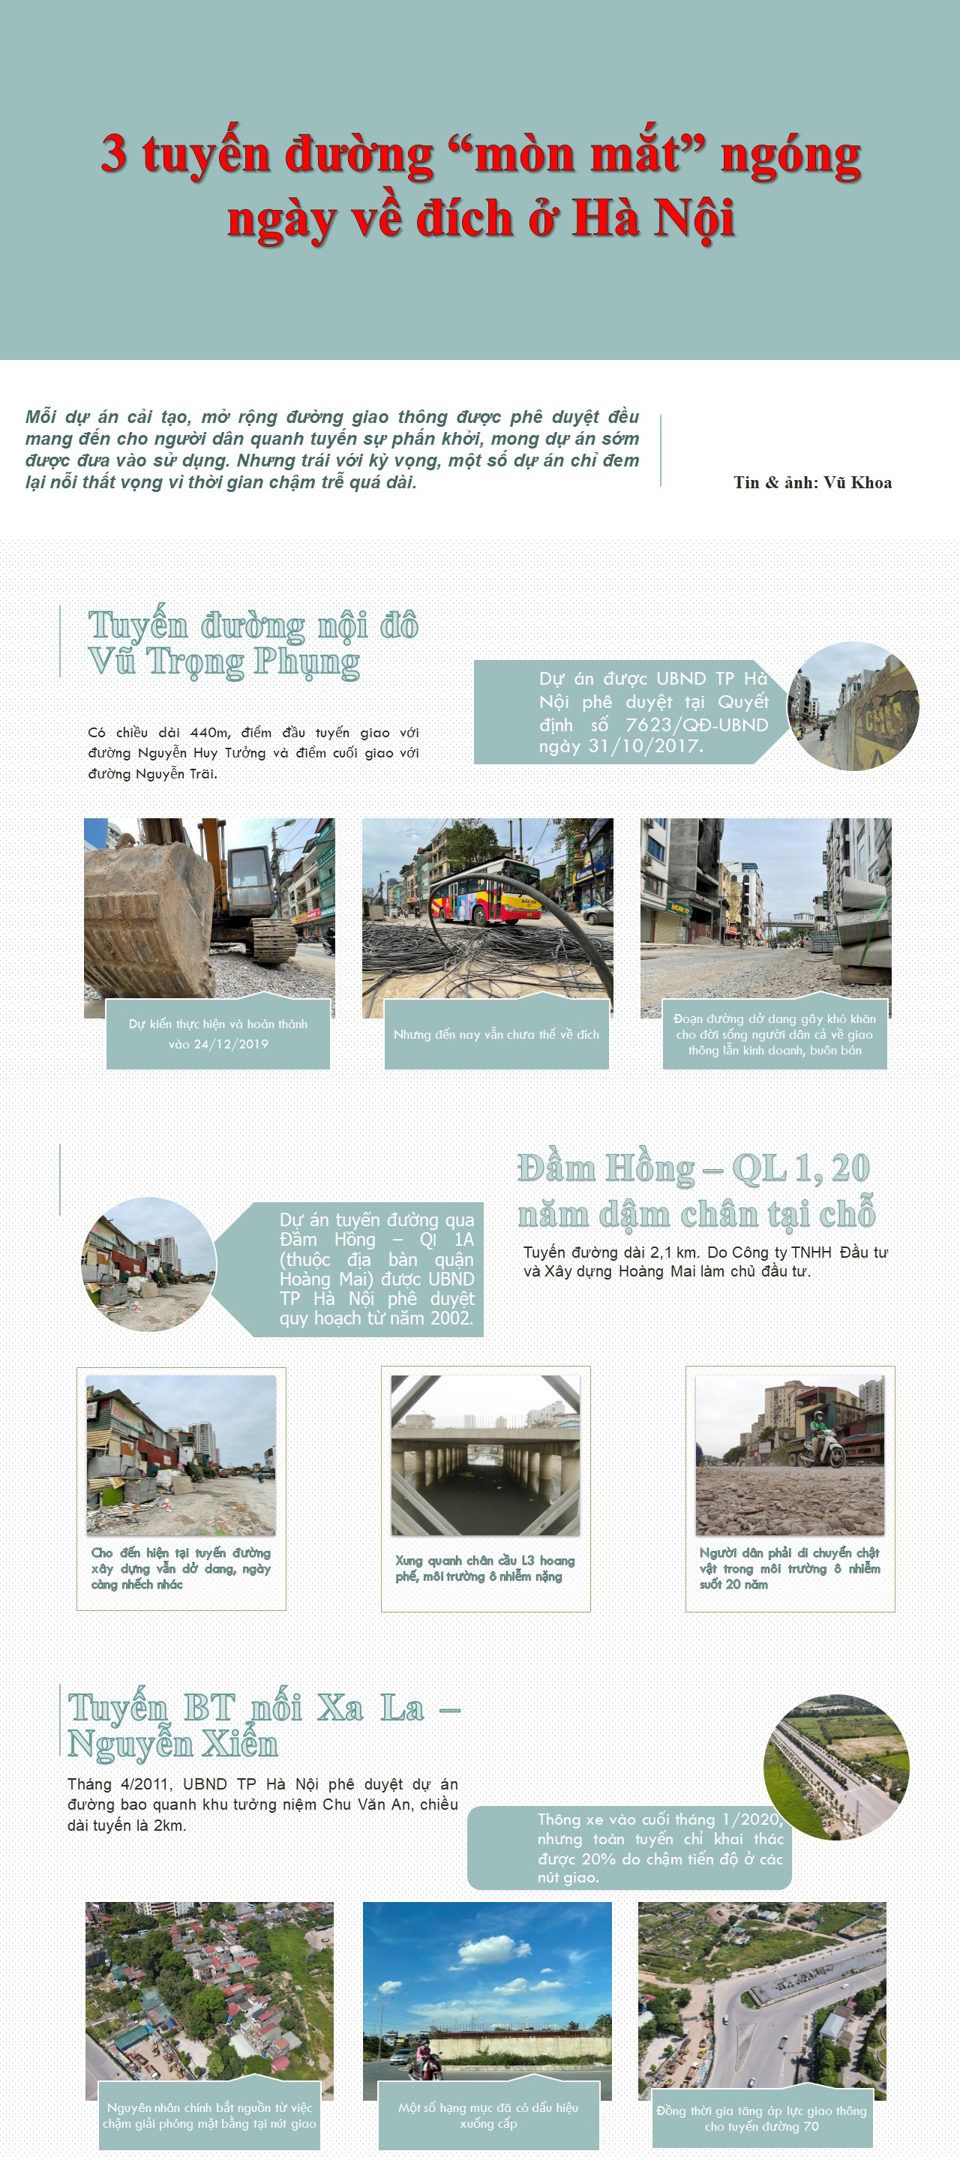 [Infographic] 3 tuyến đường "mòn mắt" ngóng ngày về đích ở Hà Nội - Ảnh 1